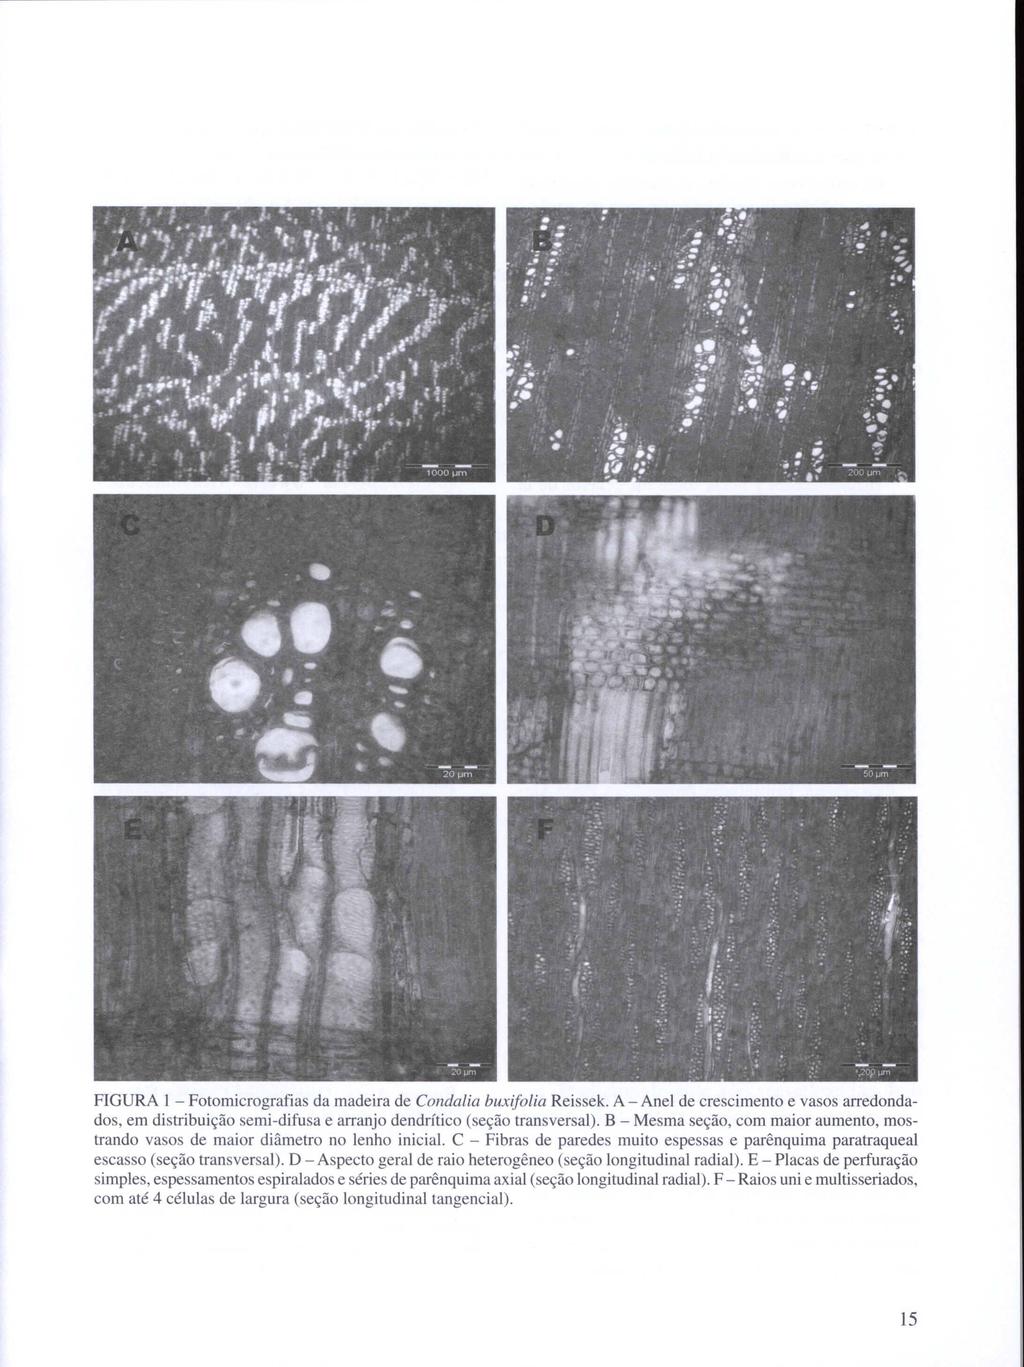 FIGURA I- Fotomicrografias da madeira de Conda/ia buxifo/ia Reissek. A - Anel de crescimento e vasos arredondados, em distribuição semi-difusa e arranjo dendrítico (seção transversal).